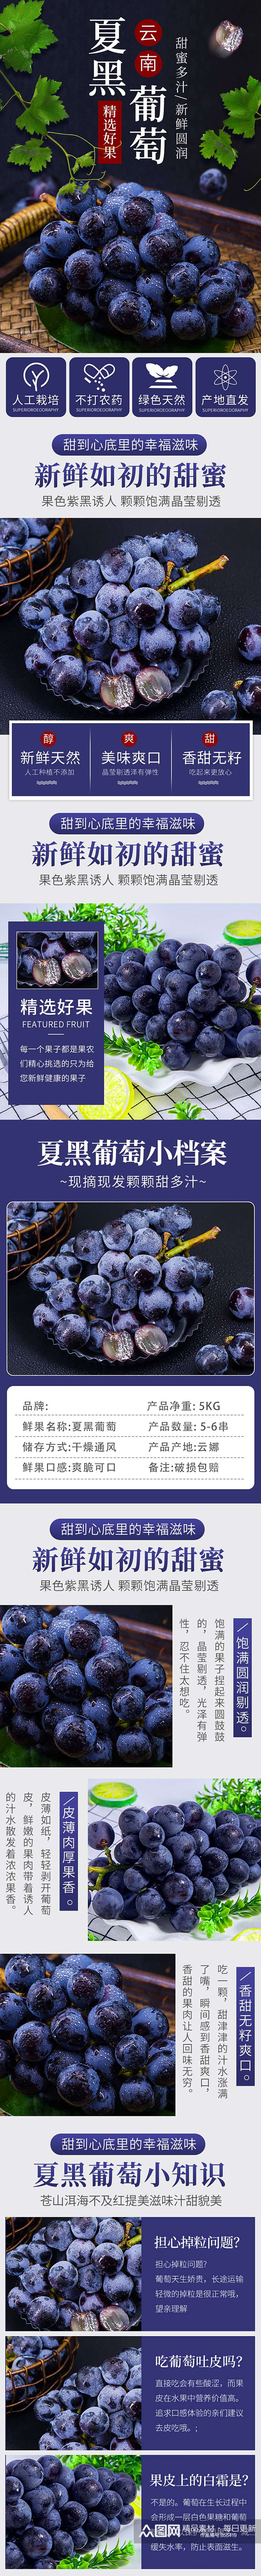 美食生鲜水果果蔬夏黑葡萄详情页素材